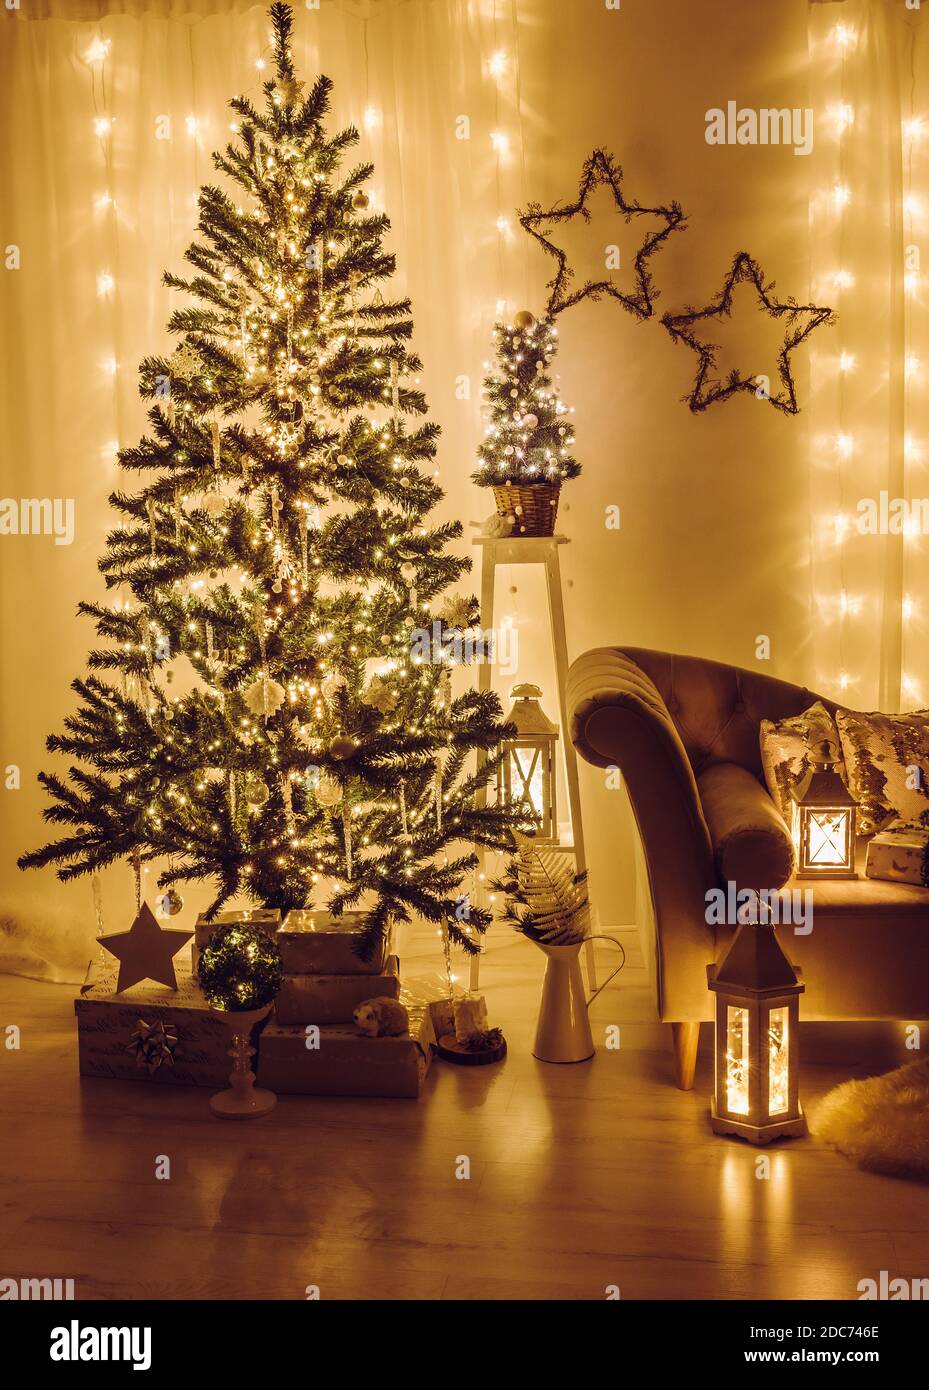 Soggiorno a casa decorato per la vigilia di Natale. Albero di abete rosso di Natale decorato con luci di festa, iciclette e fiocchi di neve, avvolti regali di Natale. Foto Stock